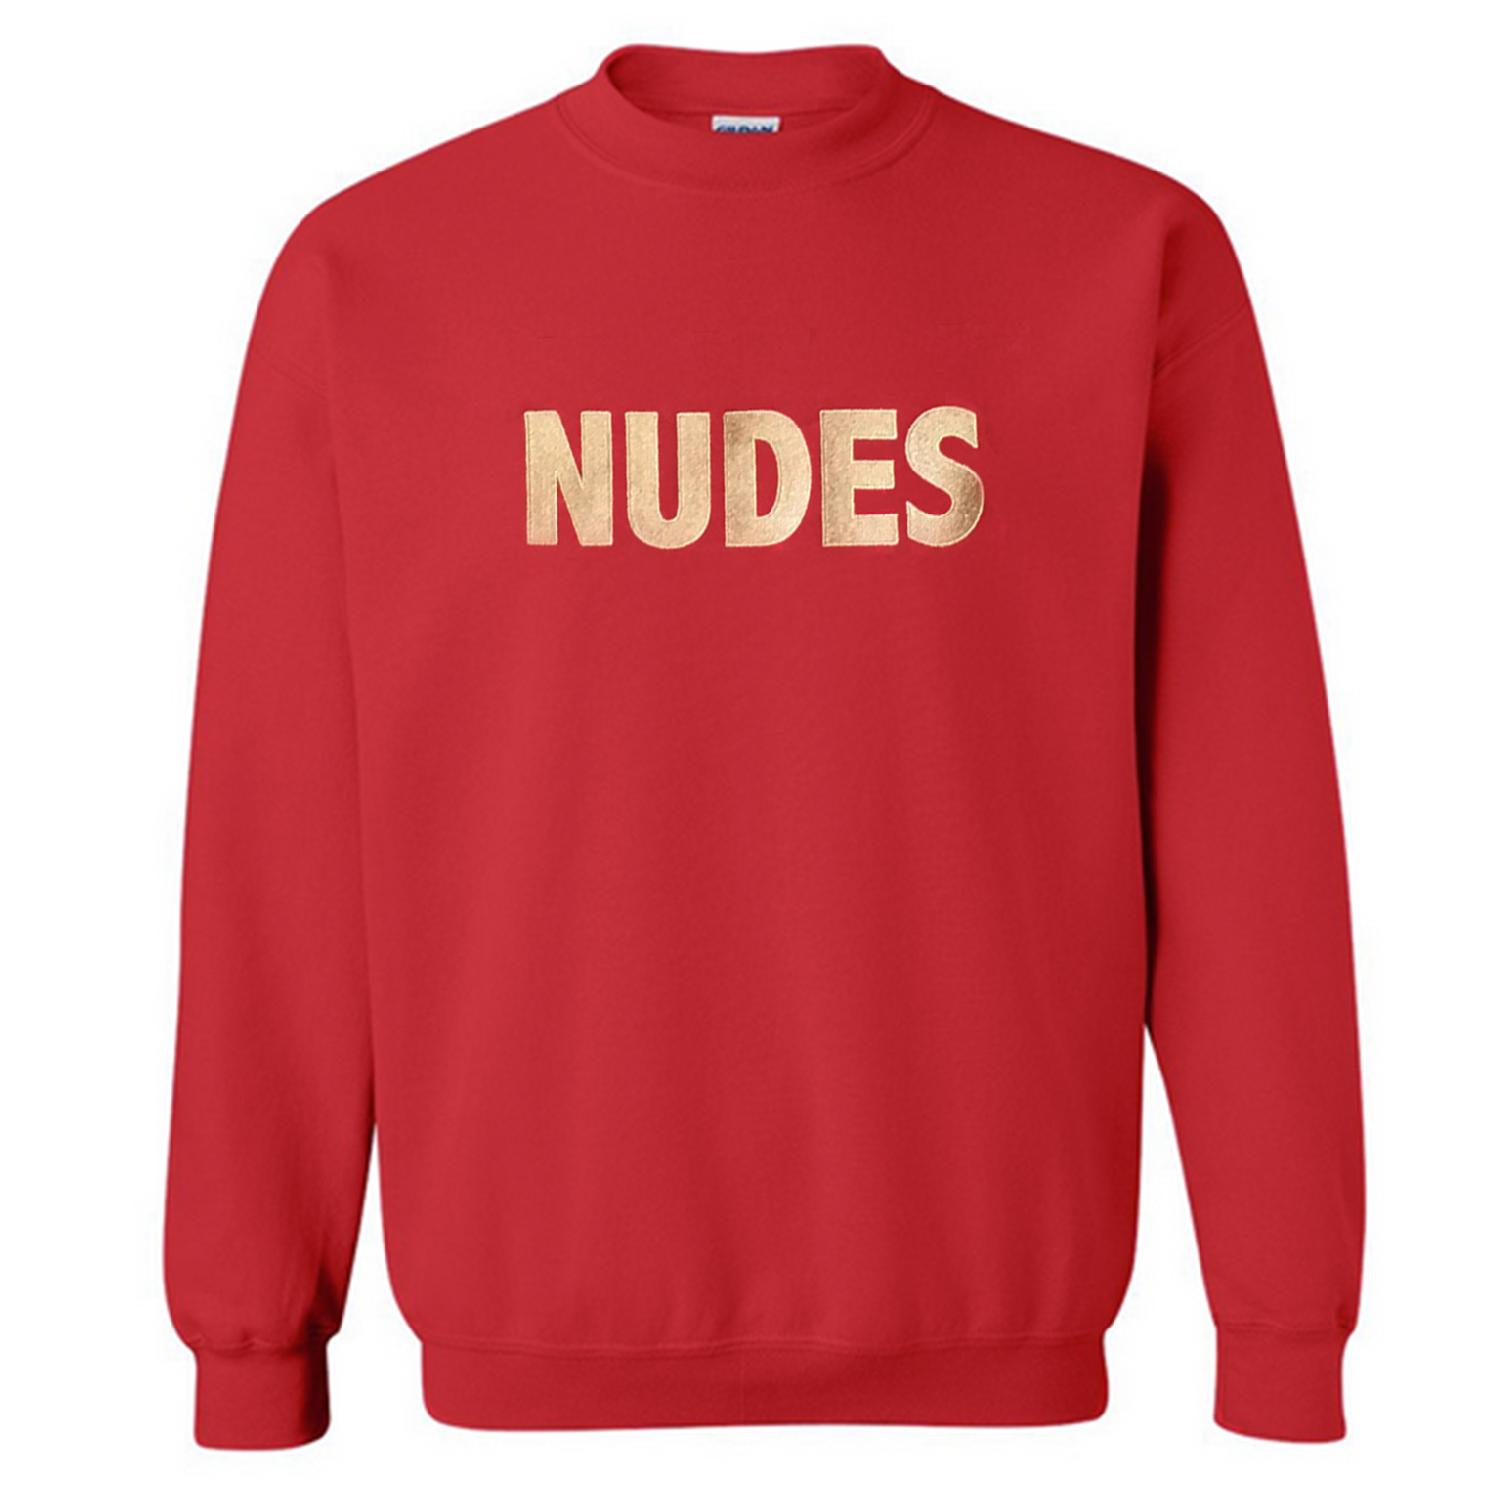 Weiter Weiter Nudes Sweater, Red